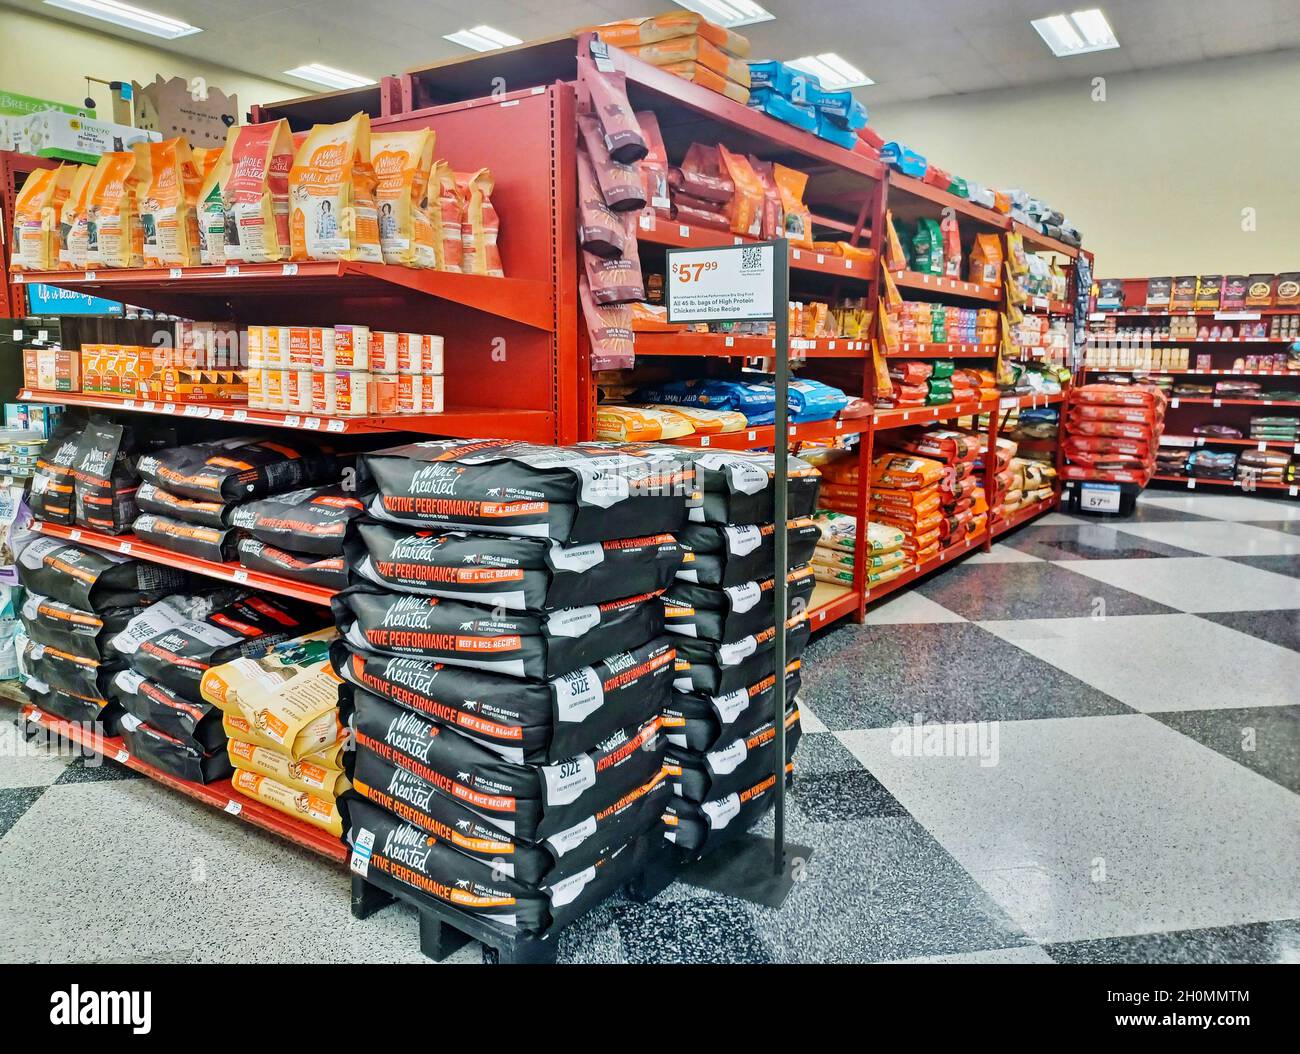 Houston, Texas EE.UU. 09-10-2021: Bolsas y contenedores de comida para perros en exhibición dentro de una tienda Petco local en Houston, TX. Foto de stock